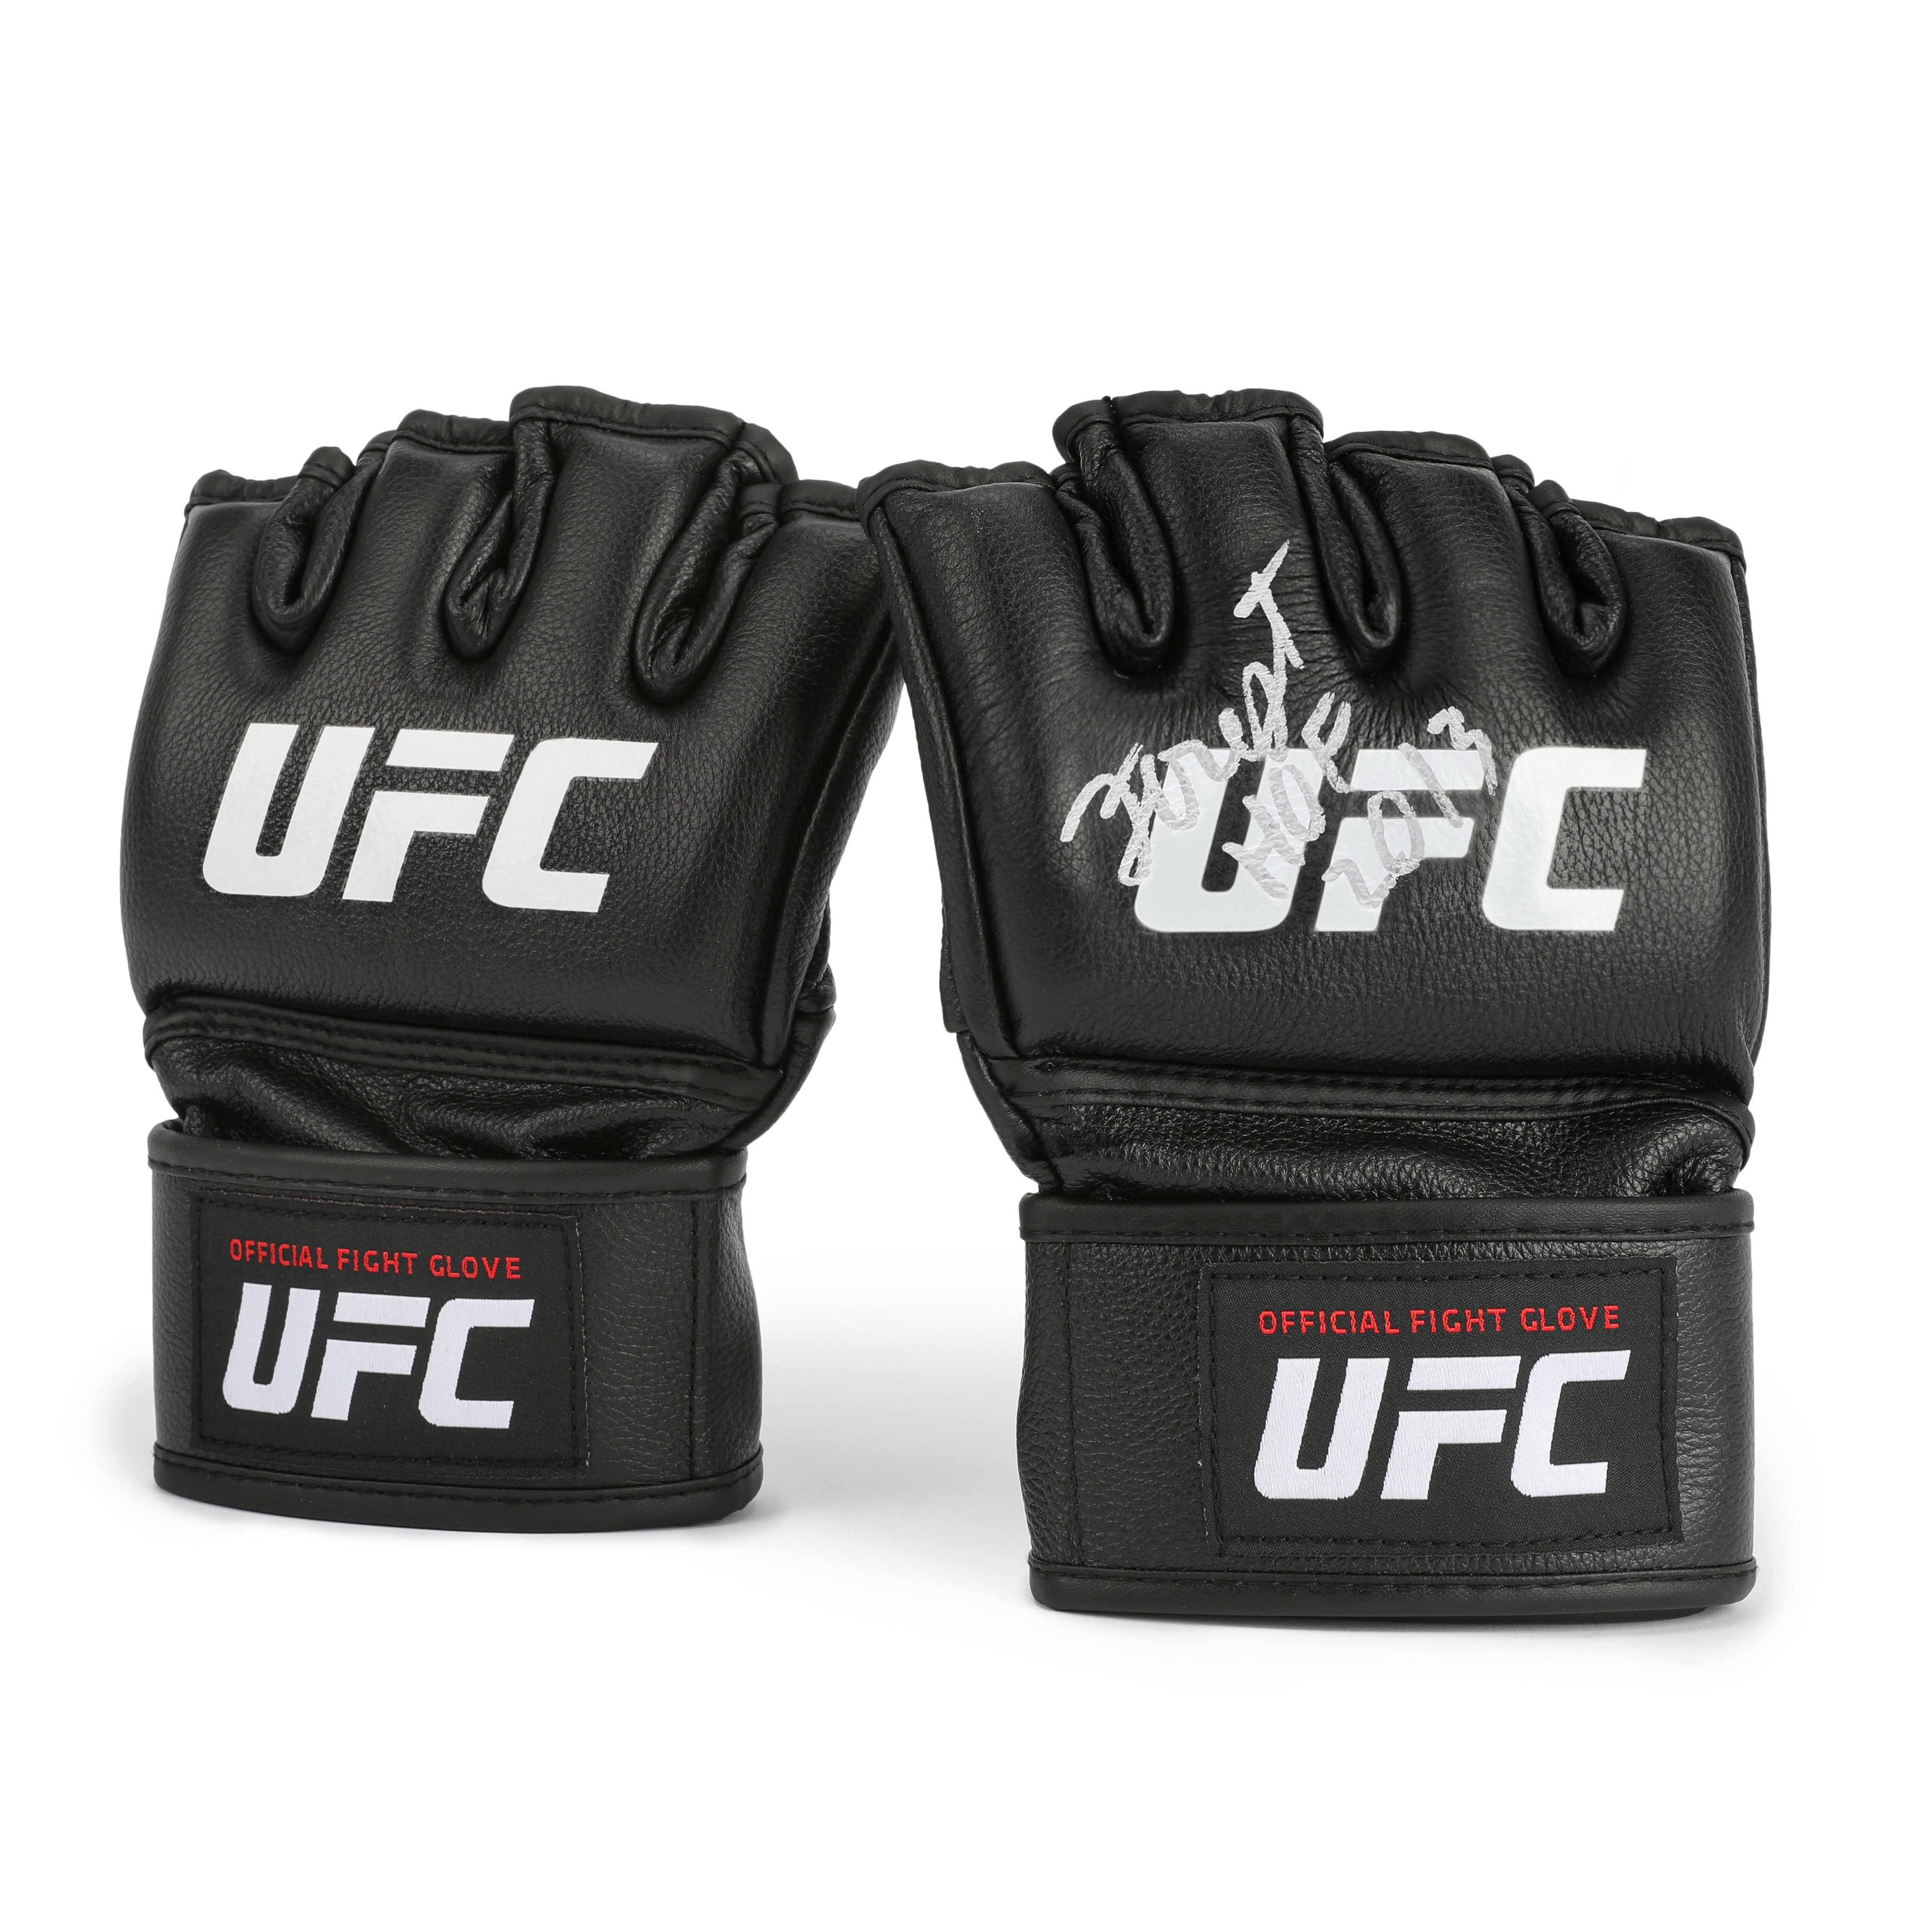 Forrest Griffin Signed Official UFC Gloves